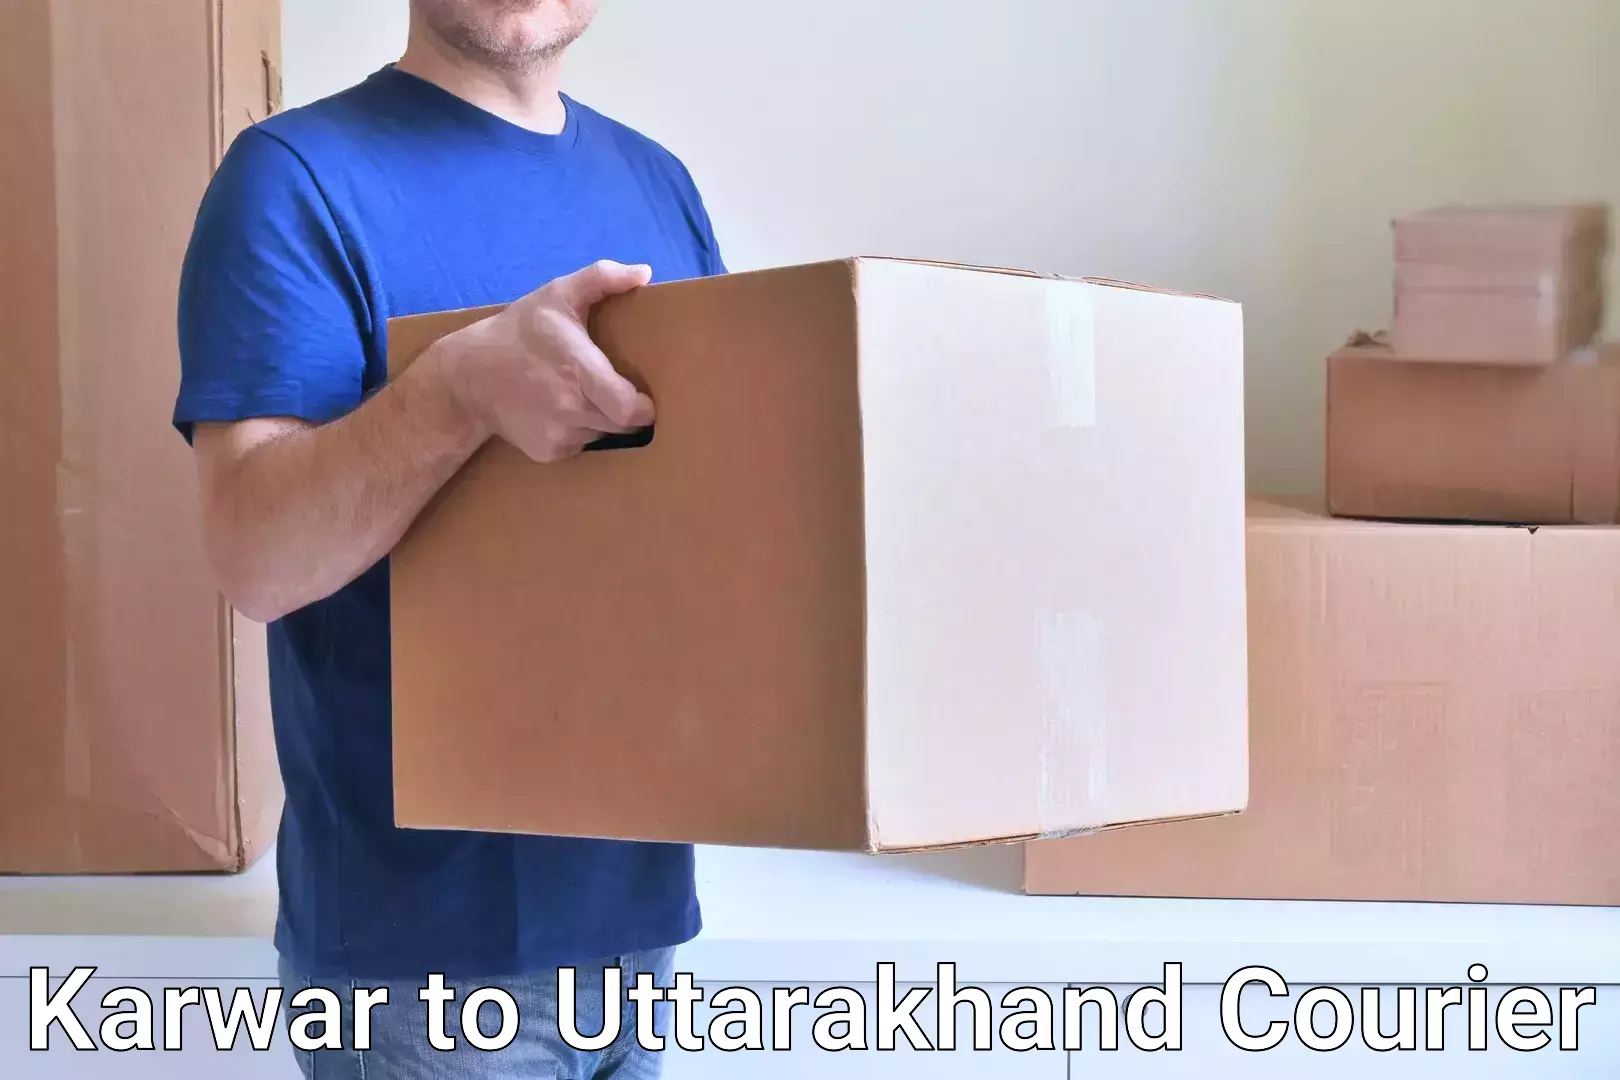 Affordable parcel service Karwar to Uttarakhand